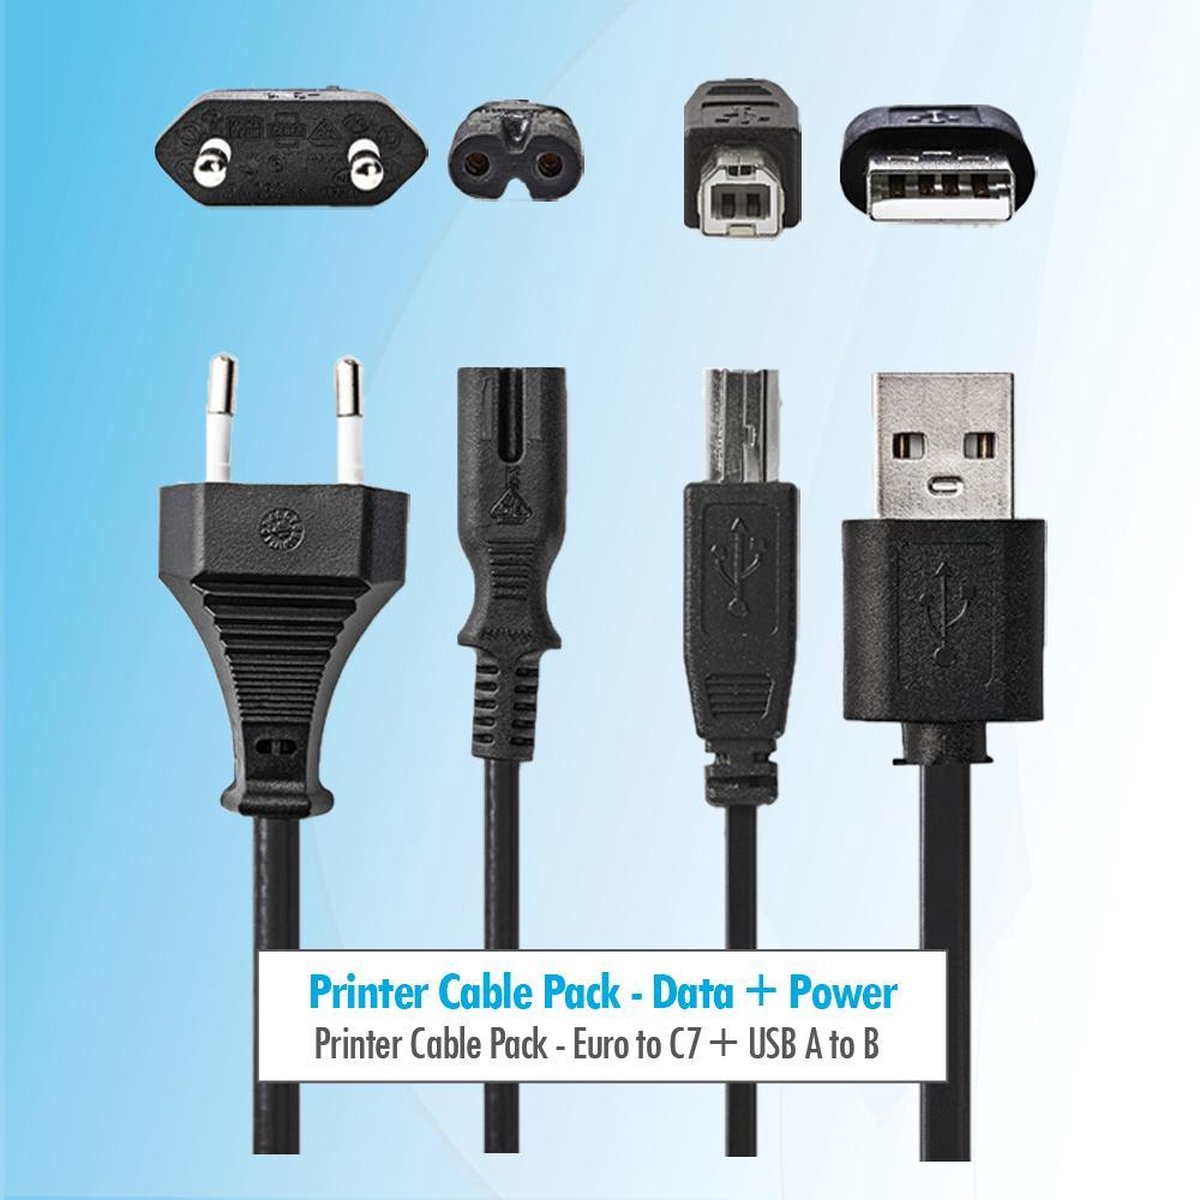 Budget Printer pakket 5 meter Printer kabel + stroom kabel voedingskabel c7